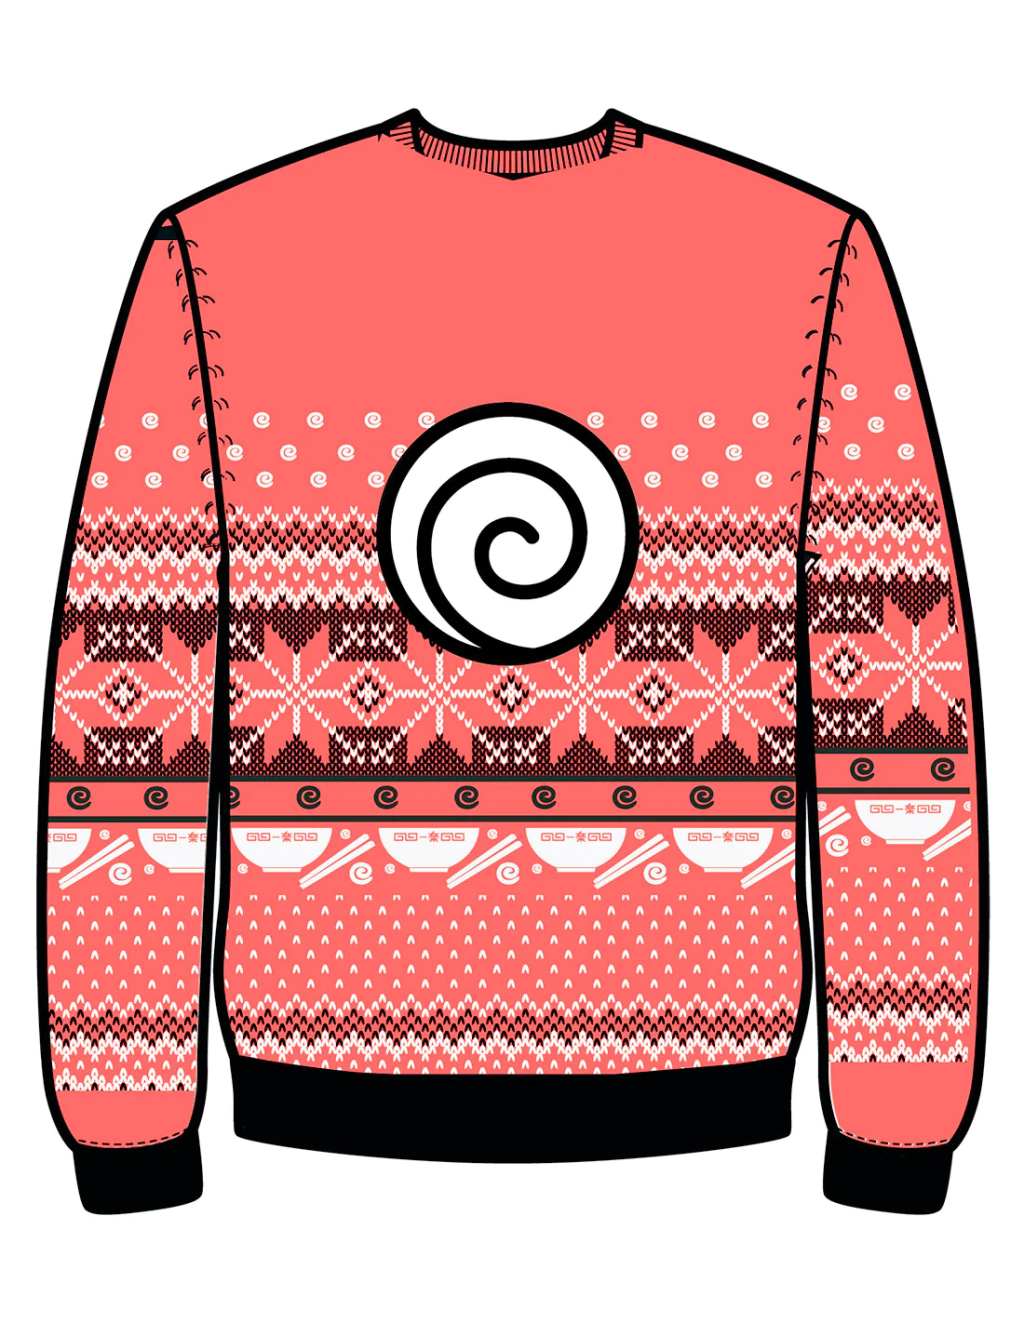 NARUTO - Ramen Ichiraku - Men Christmas Sweaters (S)